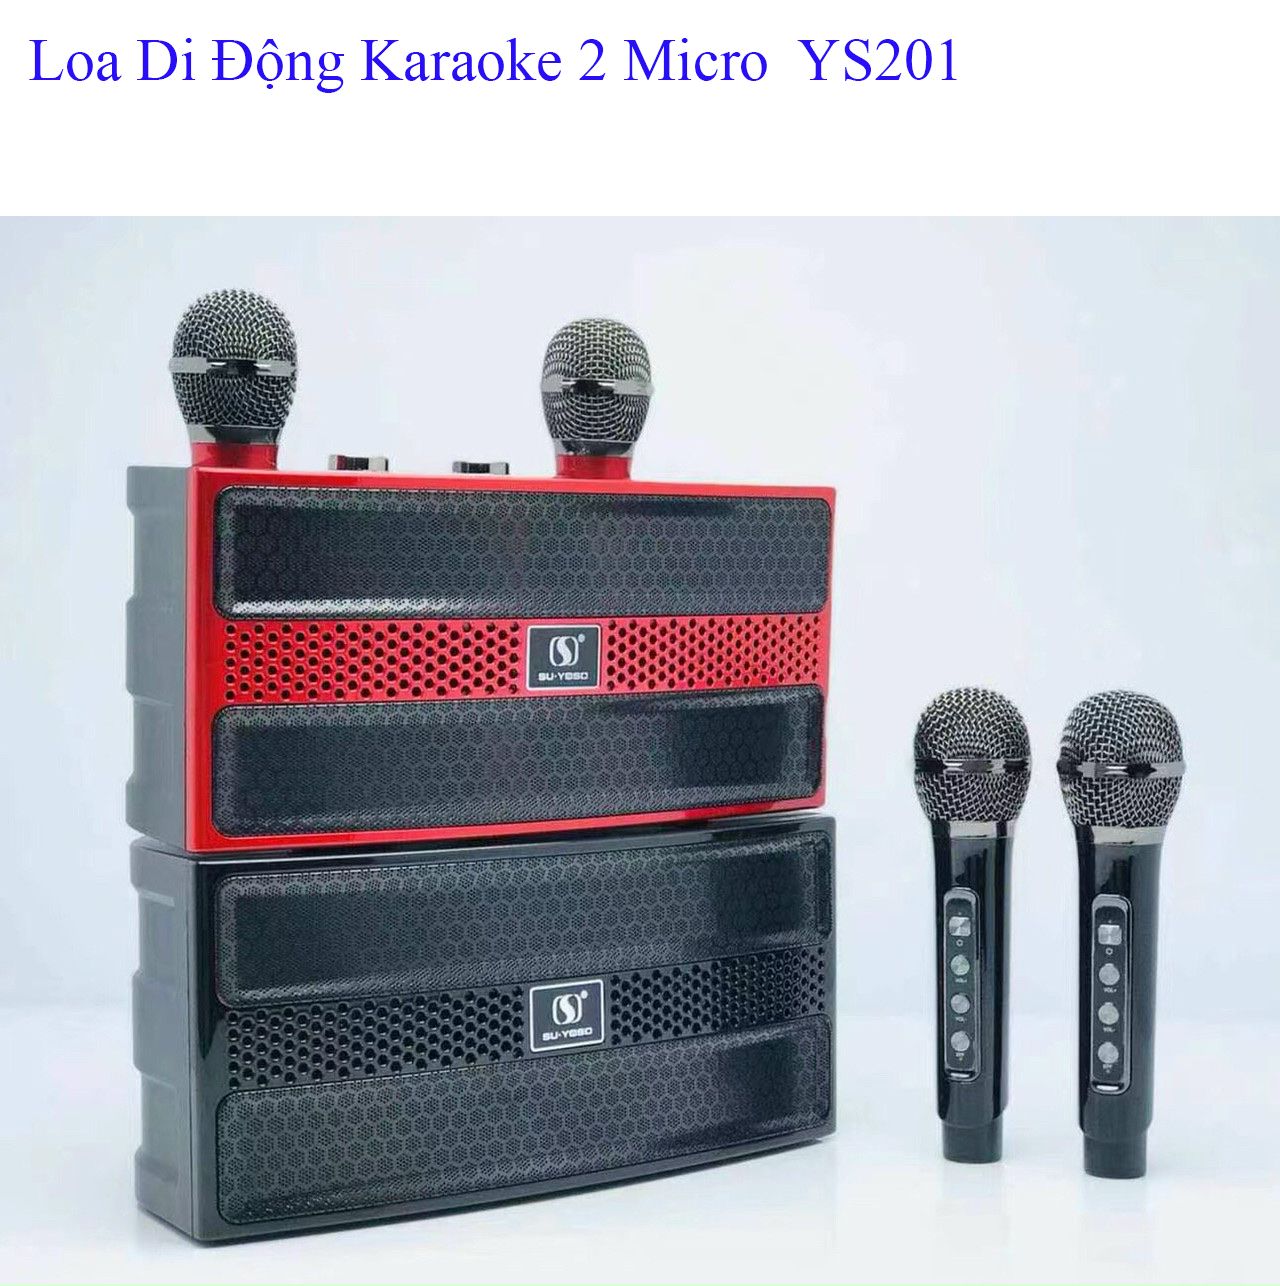 [ TẶNG KÈM 2 MICRO ] Loa Karaoke Bluetooth Không Dây Có Jack Cắm SU-YOSD YS 201- Loa Karaoke Mini Công Suất Lớn Tặng Kèm 2 Micro, Thiết Kế Với Bộ Điều Chỉnh Bass Echo Âm Lượng Trên Micro Sạc Pin Cho Micro Ngay Trên Loa Cực Kỳ Tiện Lợi